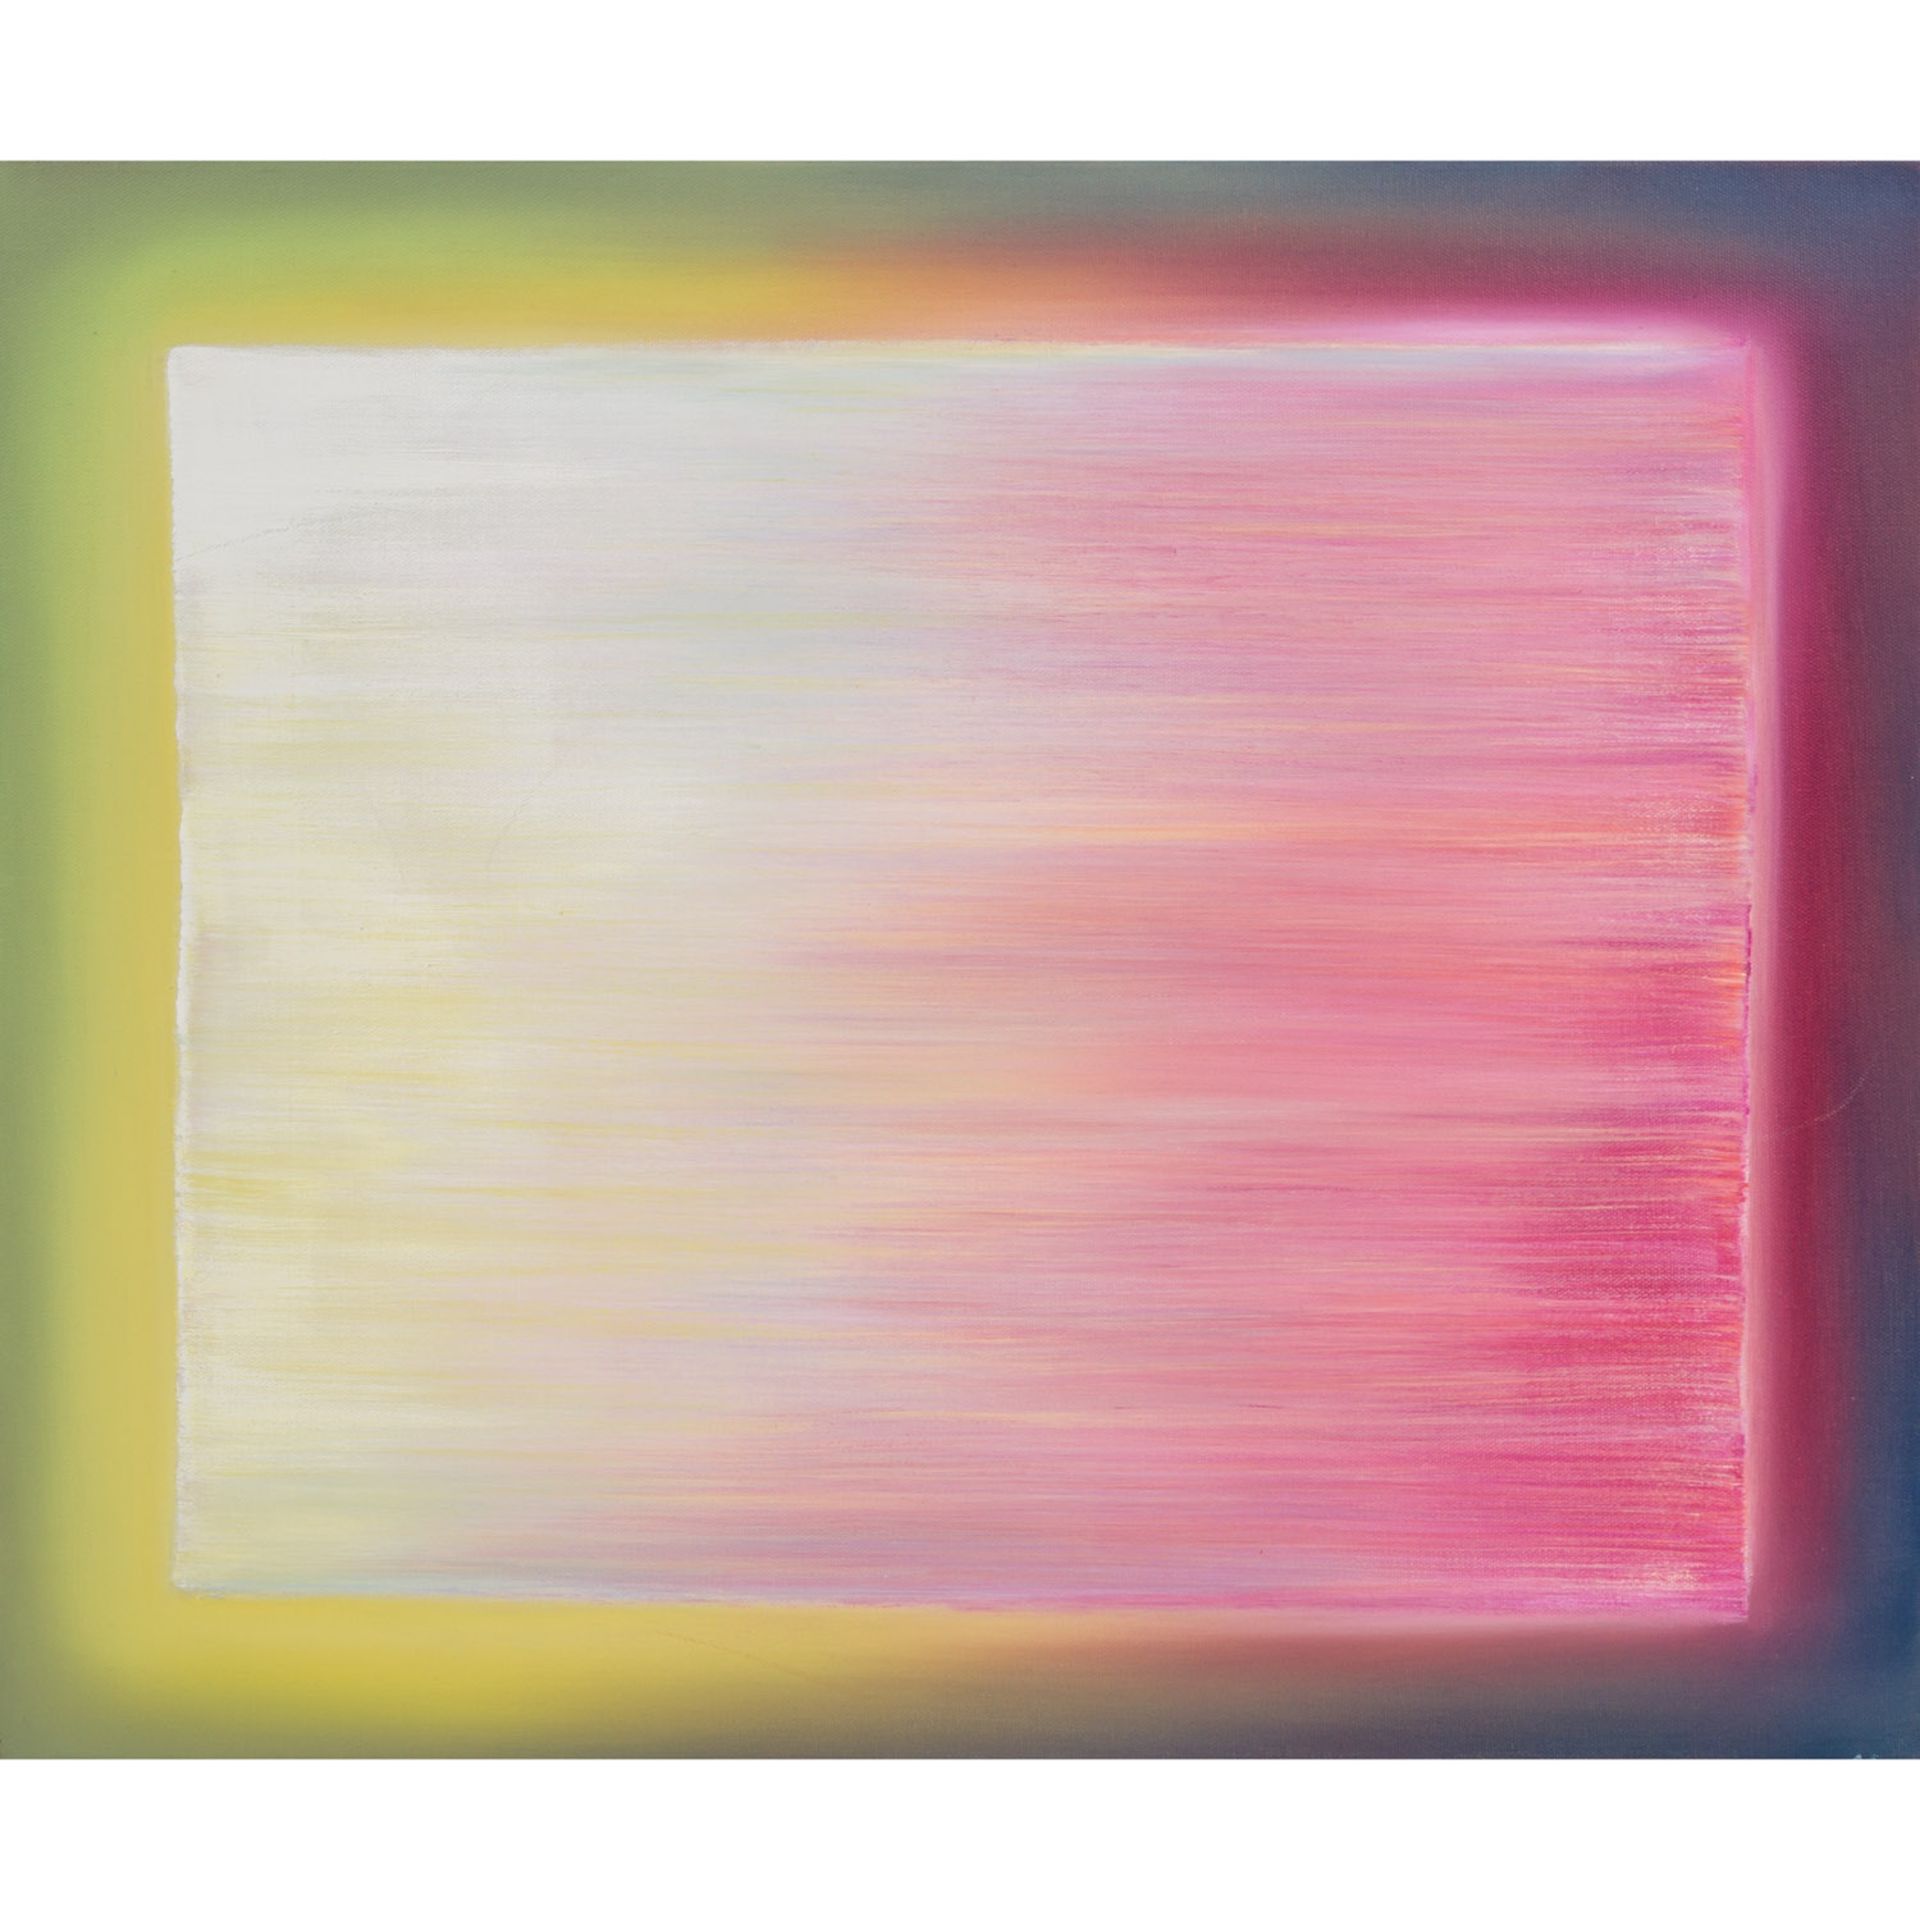 PUETZ, HARALD (geb. 1950), "Lichtspuren - Gelb/Rosé über Grün/Violett",Acryl/Leinwand, auf der